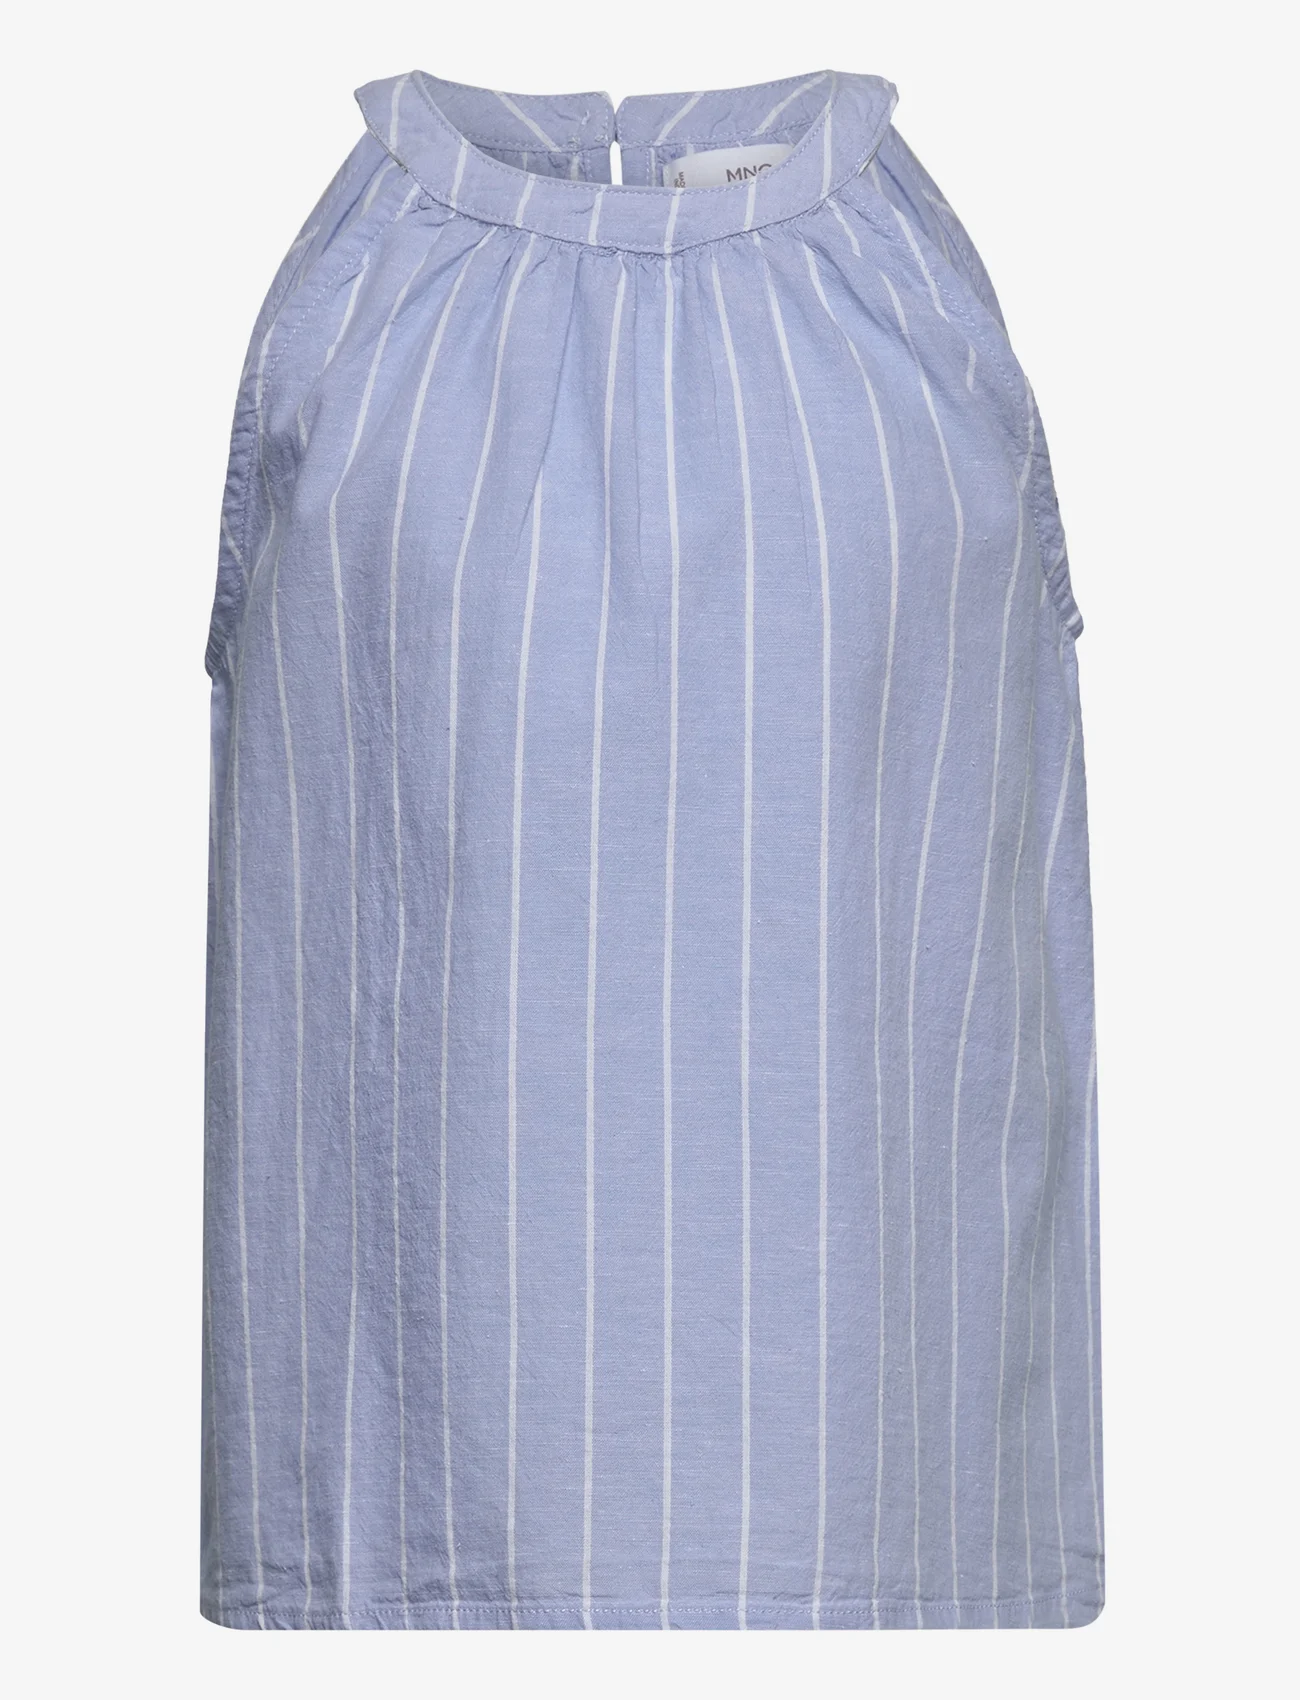 Mango - Striped blouse - gode sommertilbud - medium blue - 0